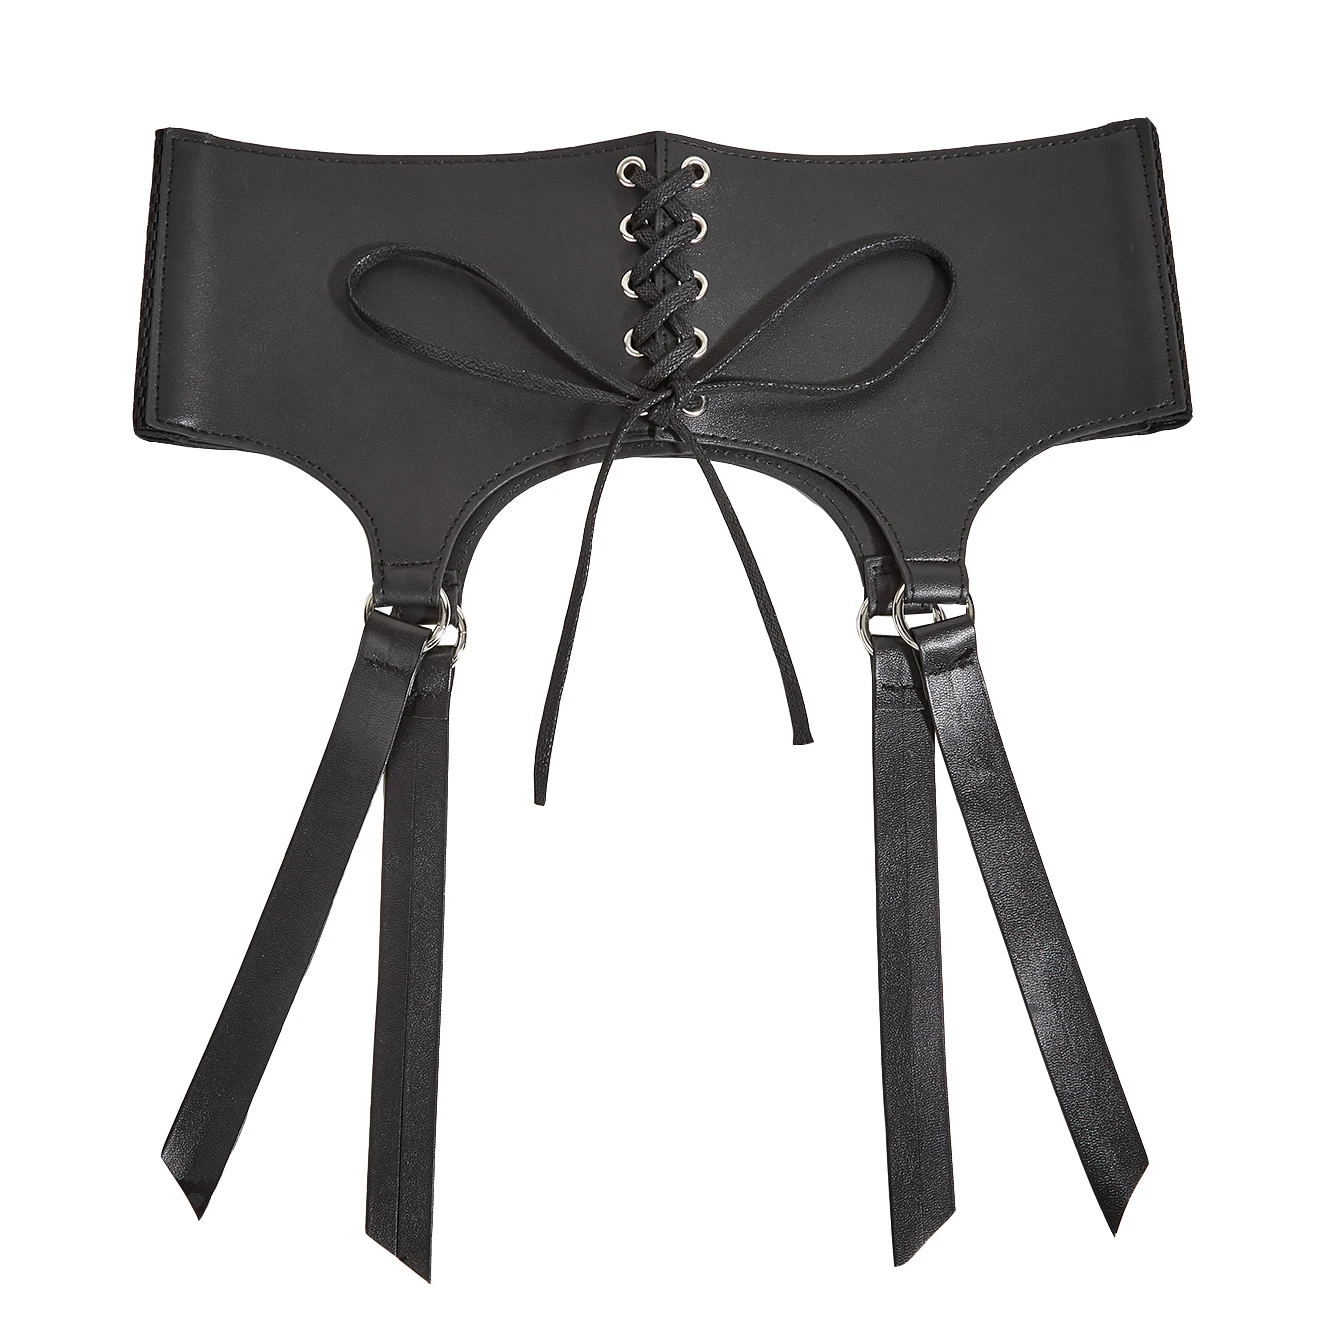 Lace up girdle Women underbust belts For Lady Black Dourbesty Vintage cummerbund corset Sex Vest Waist Comeondear gothic harness images - 6